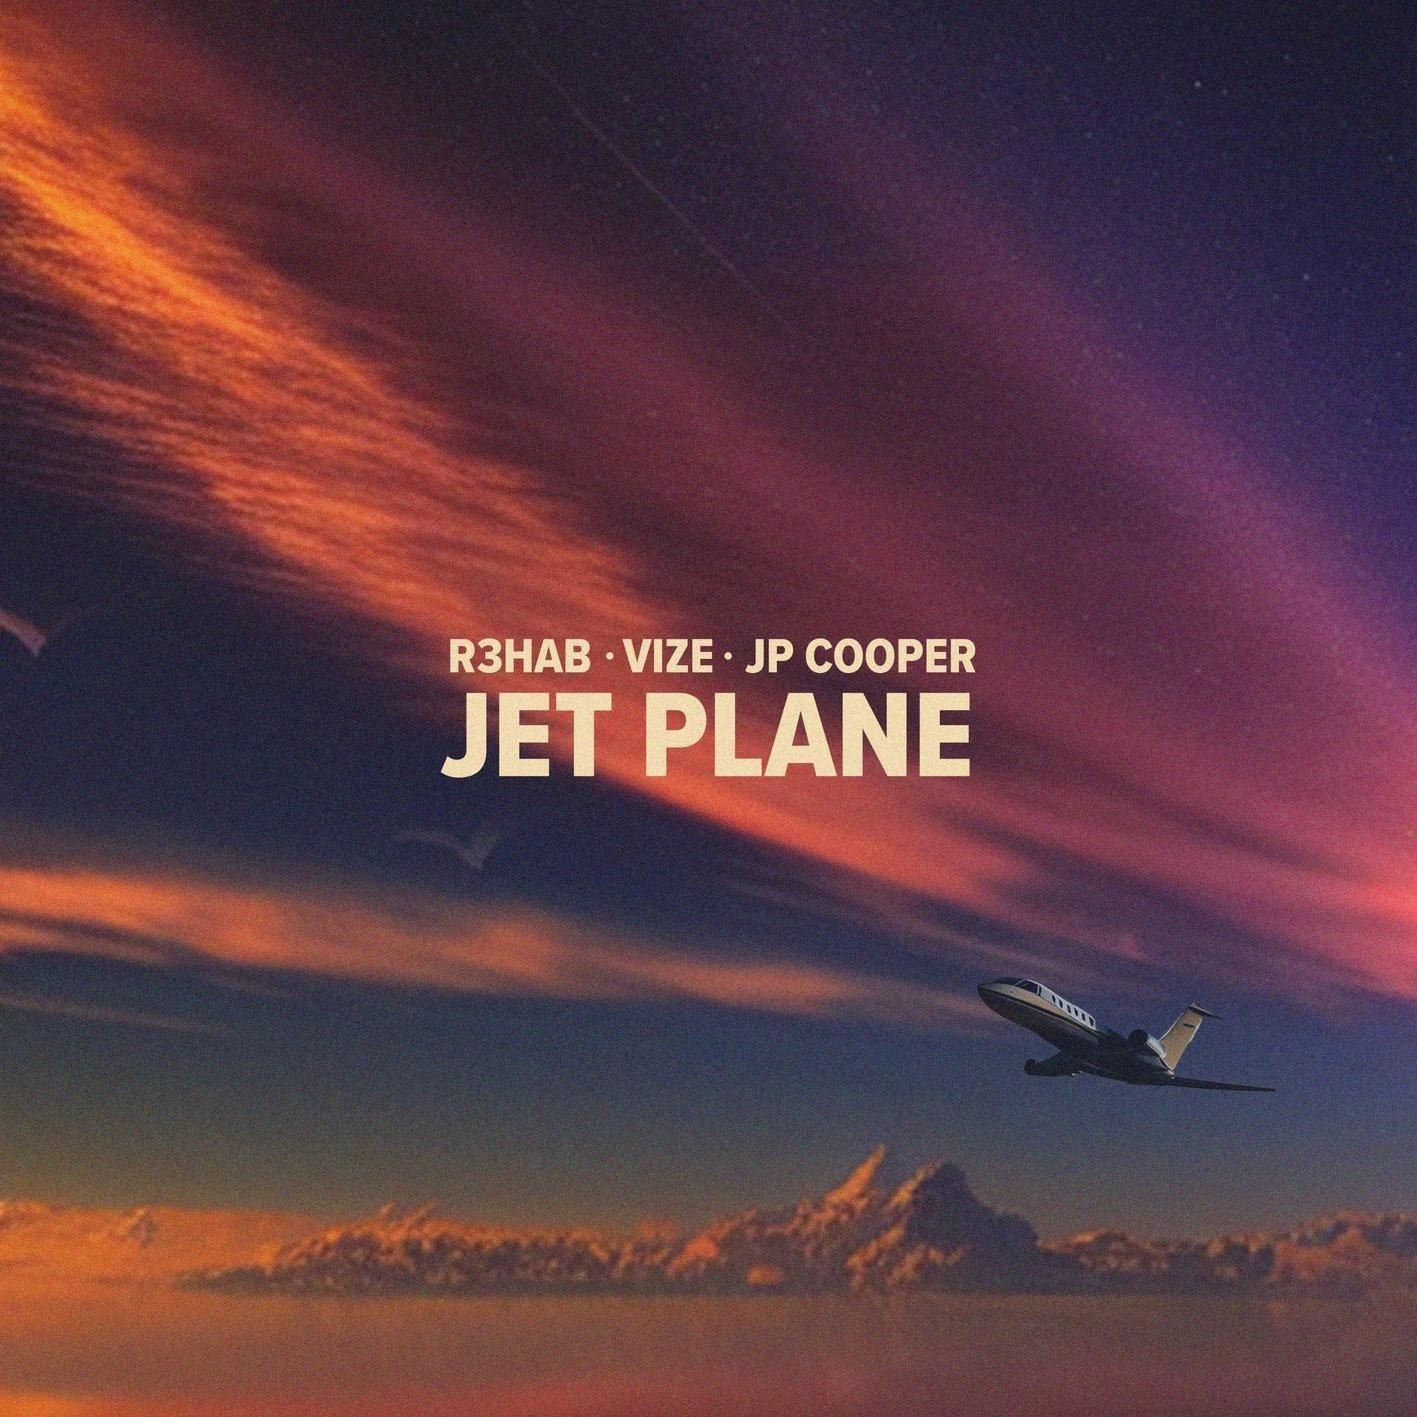 R3HAB & VIZE featuring JP Cooper — Jet Plane cover artwork